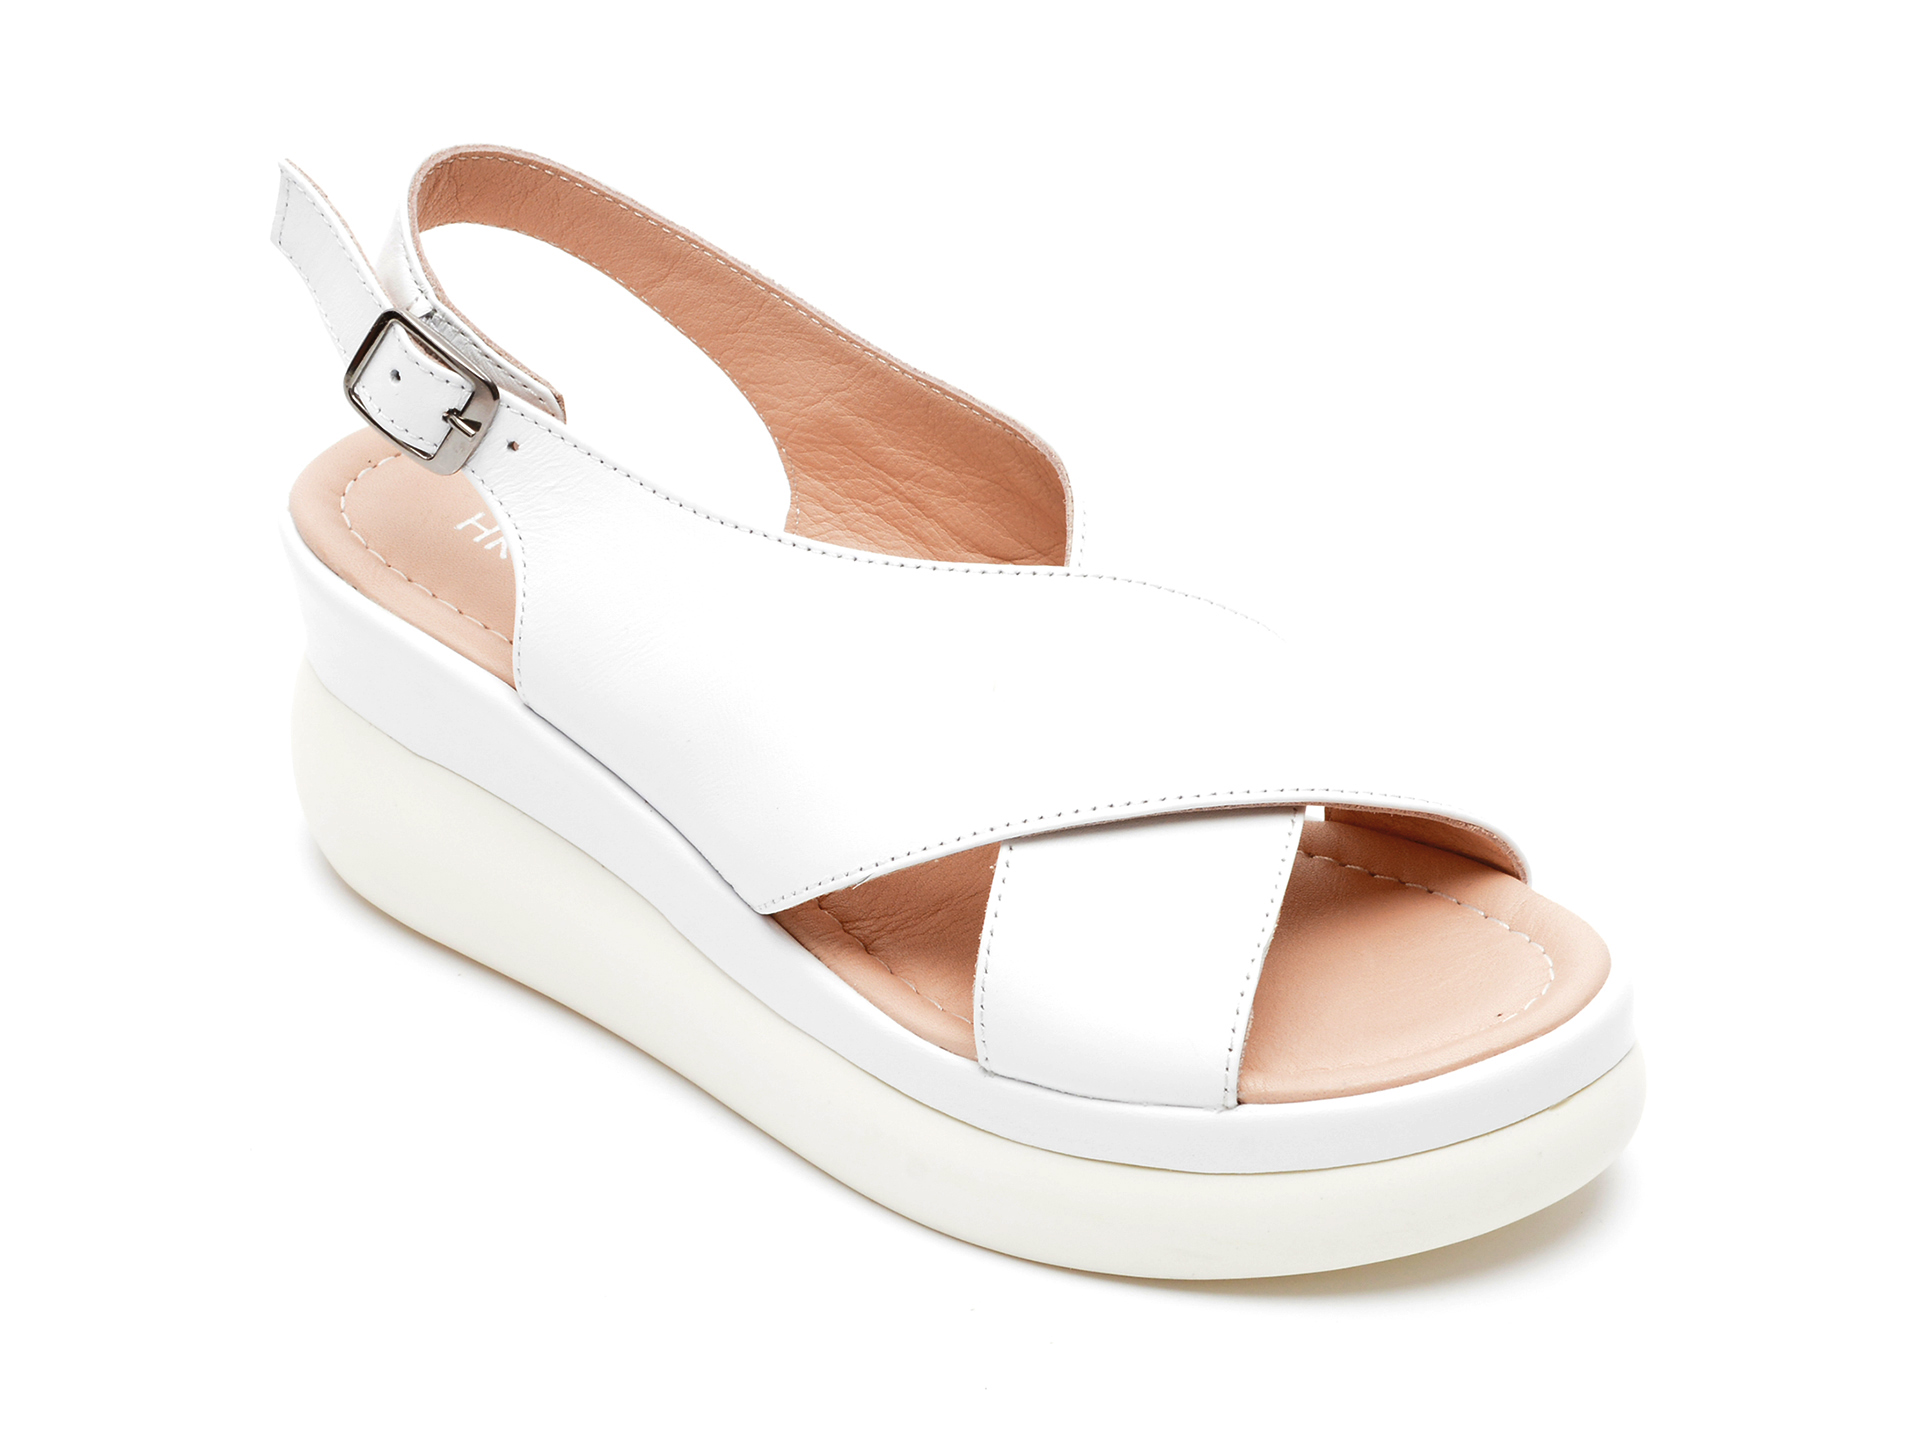 Sandale HK DIVA CLAP albe, 4141, din piele naturala /femei/sandale imagine noua